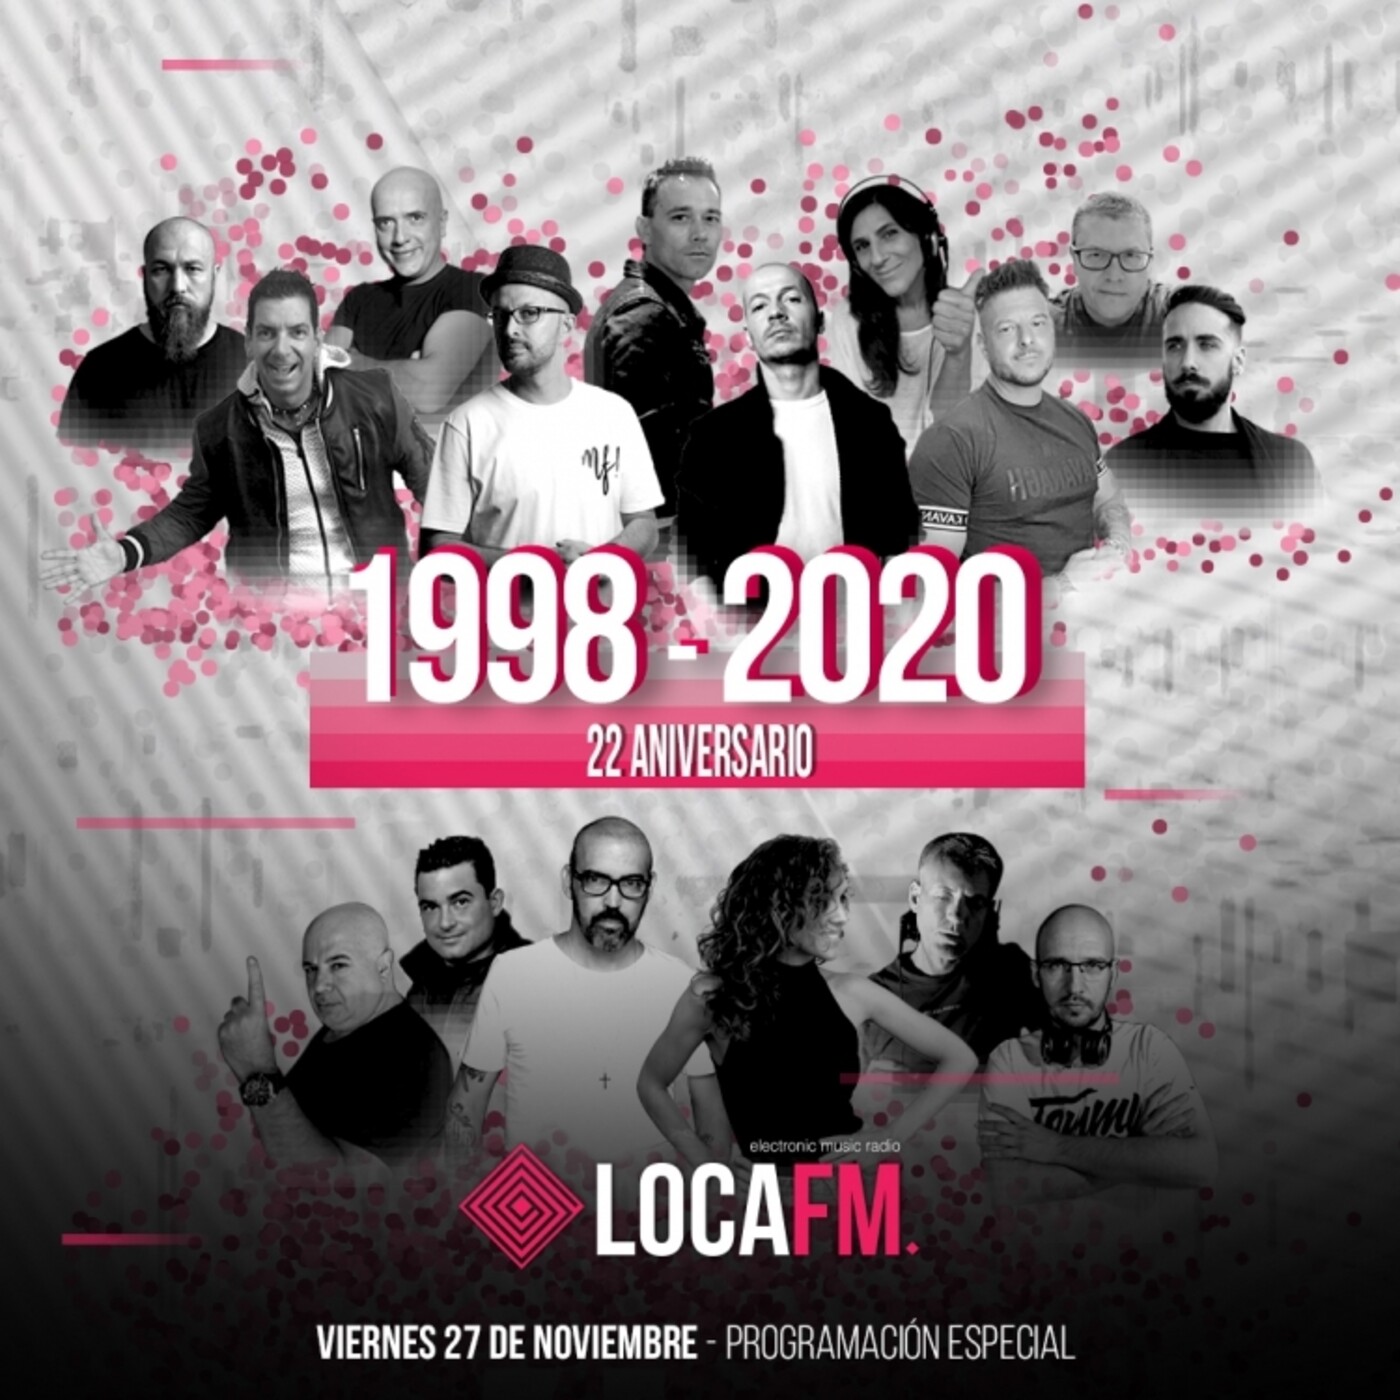 LOCA FM, ESPECIAL 22 ANIVERSARIO